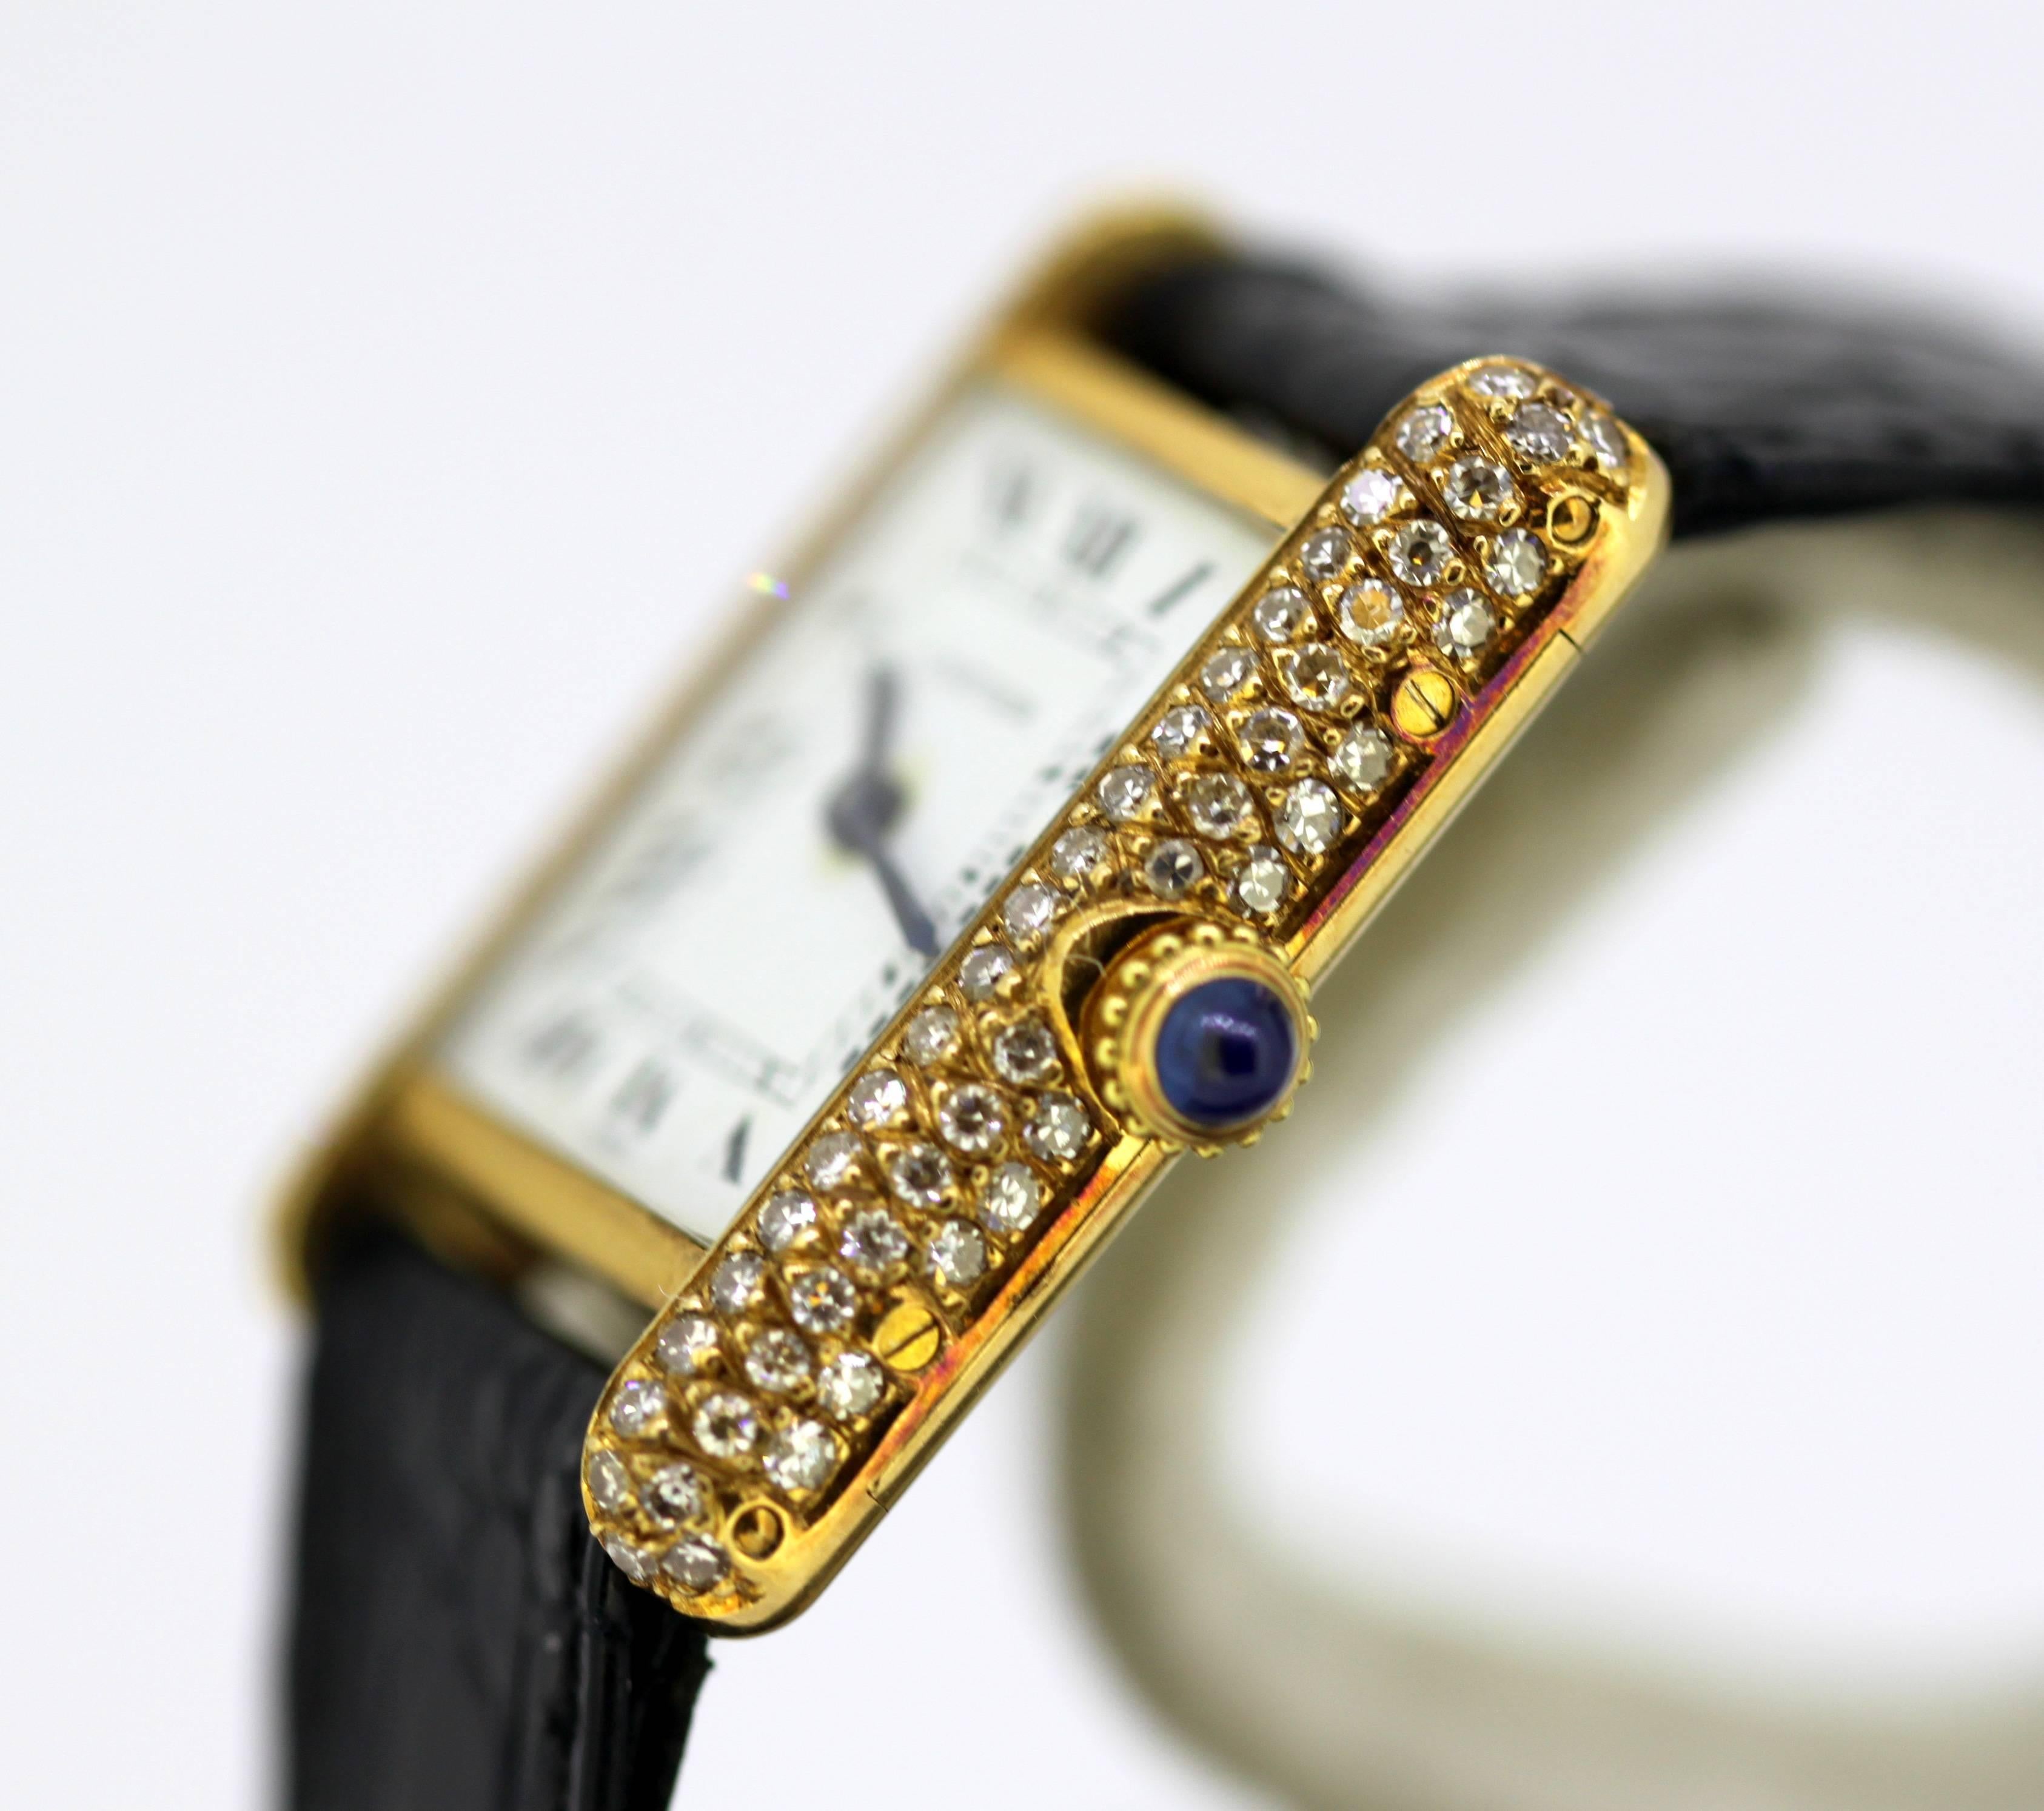 Women's Ladies Cartier Tank Louis Watch in 18 Karat Gold and Bezel Set with Diamonds